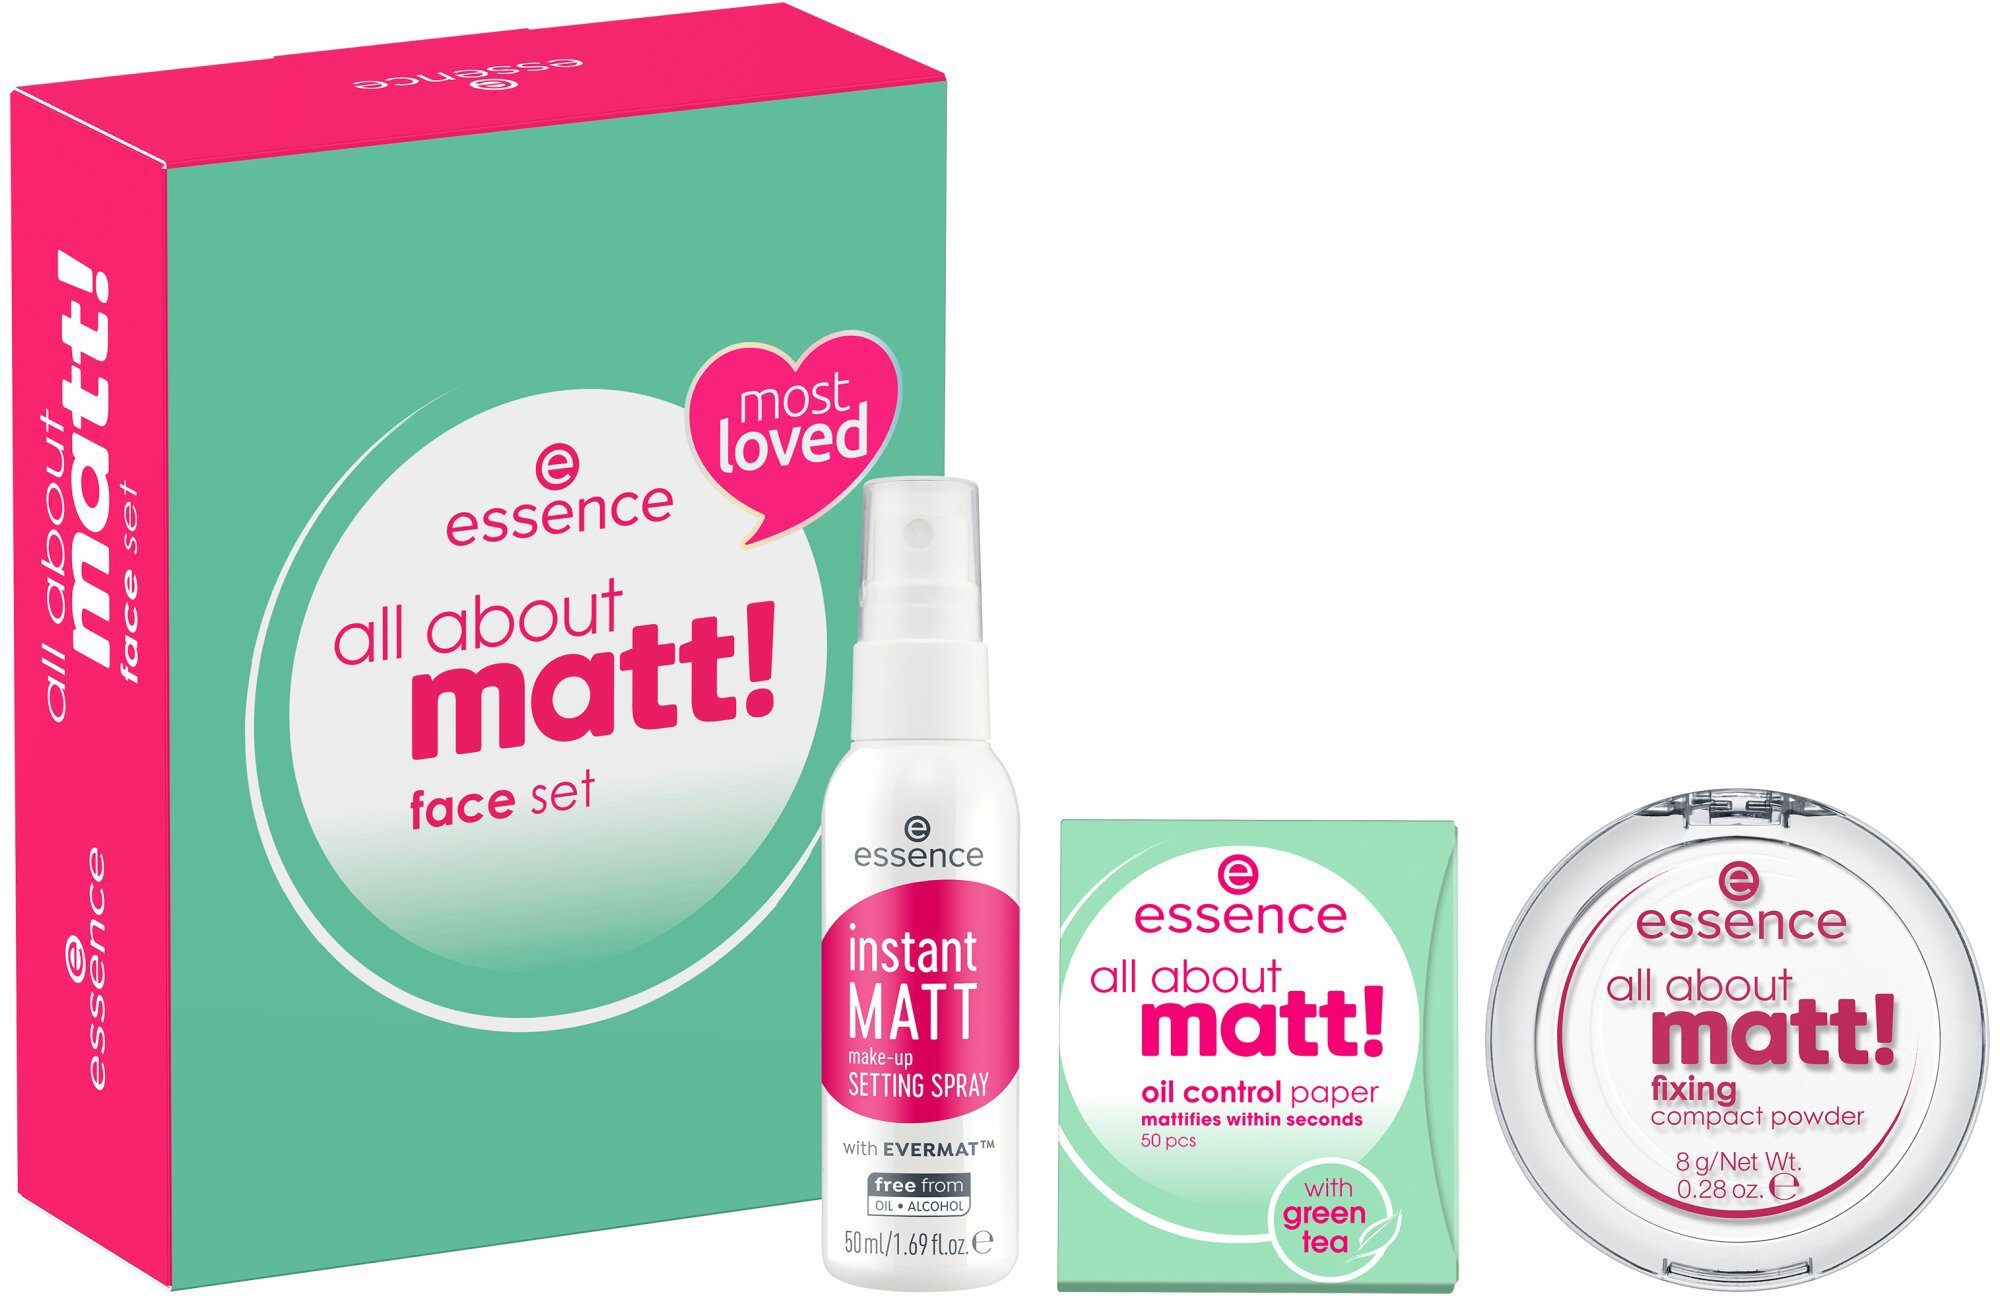 Set about all Essence set, matt! Make-up face